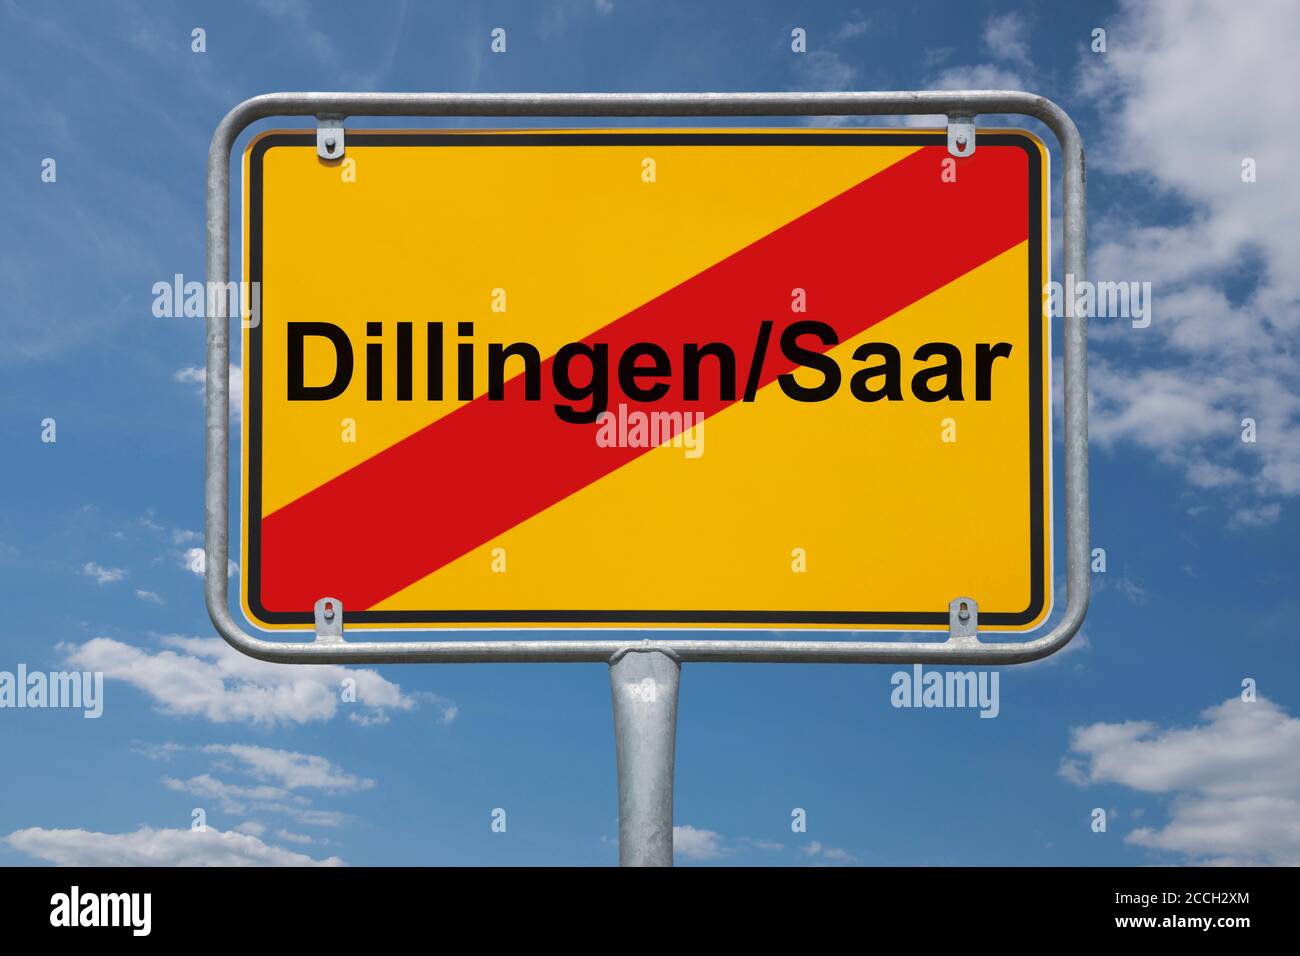 Ortstafel Dillingen/Saar, Saarland, Deutschland | Place name sign Dillingen/Saar, Saarland, Germany, Europe Stock Photo